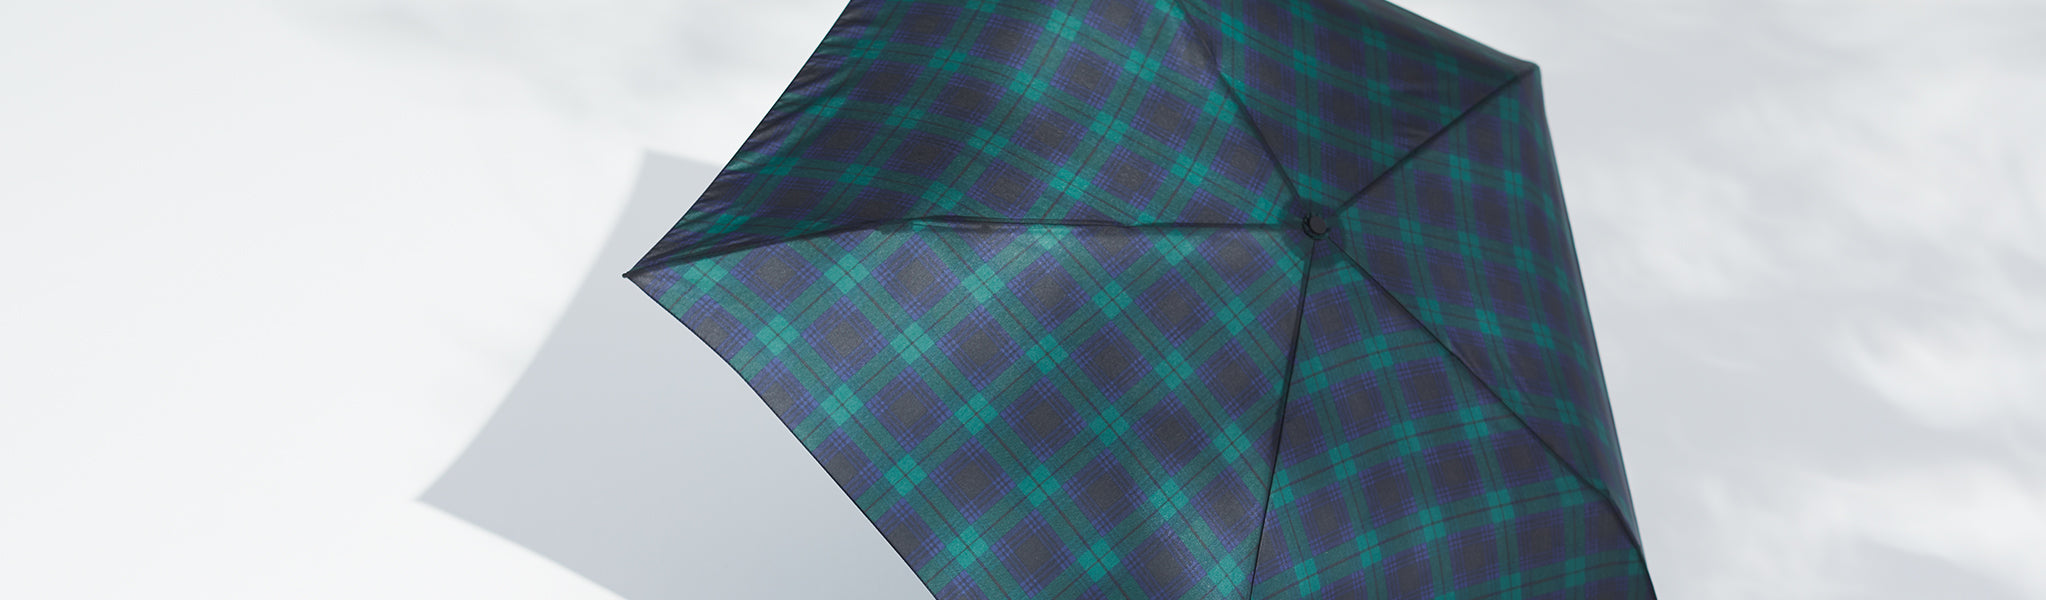 MUJI Umbrellas-Green & Blue Checkered Open Umbrella